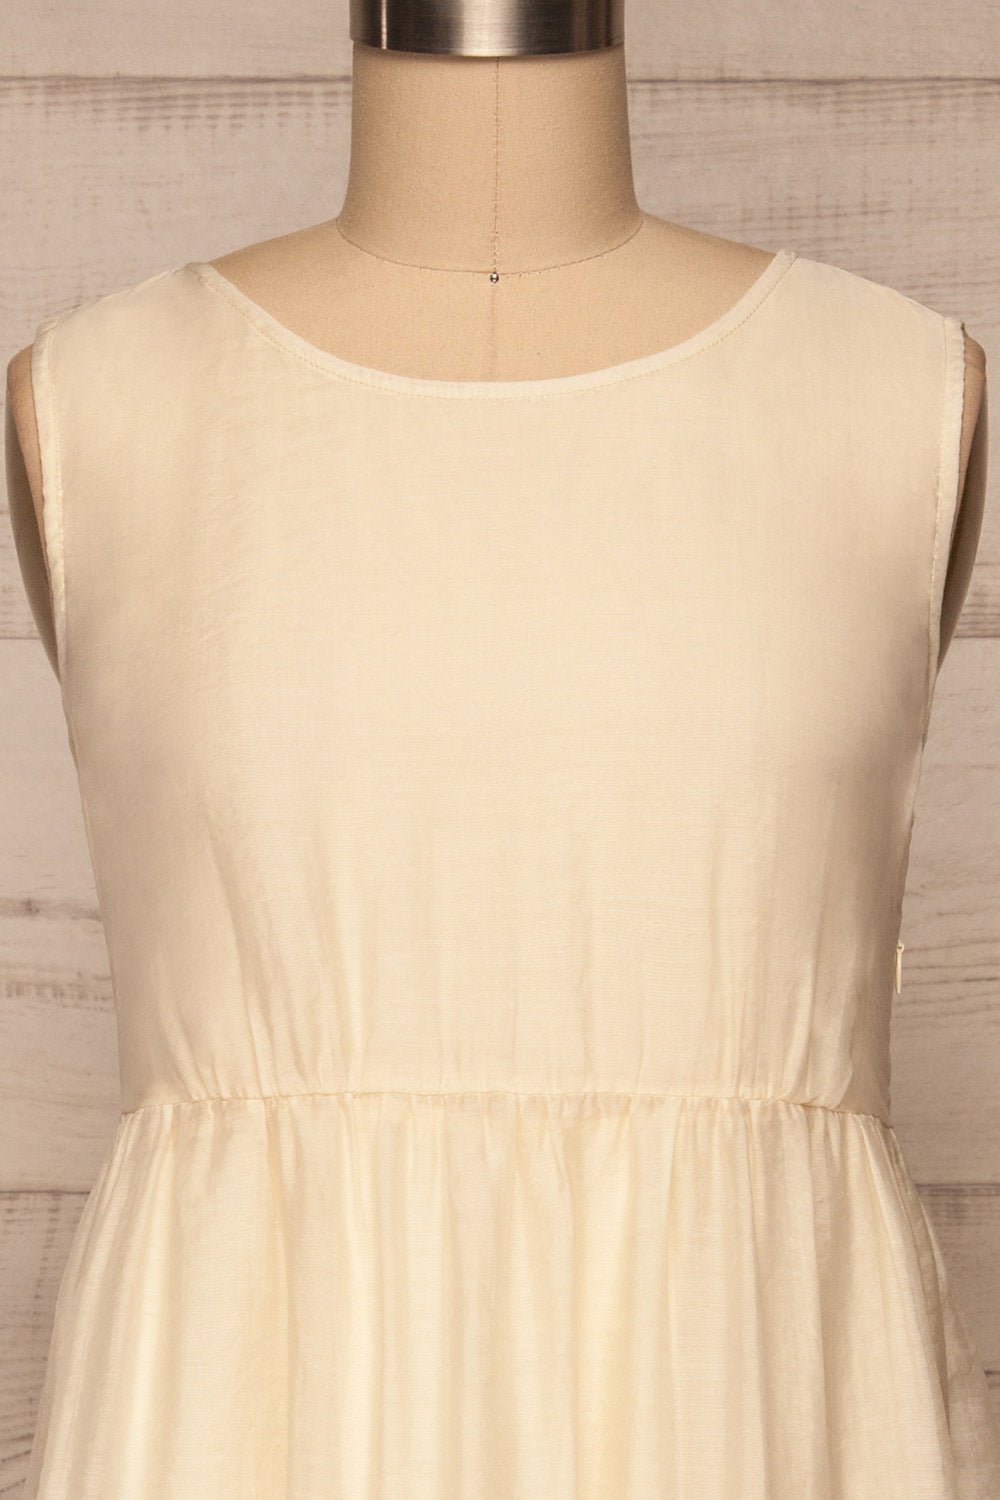 Duleek Off White A-Line Midi Dress front close up | La petite garçonne